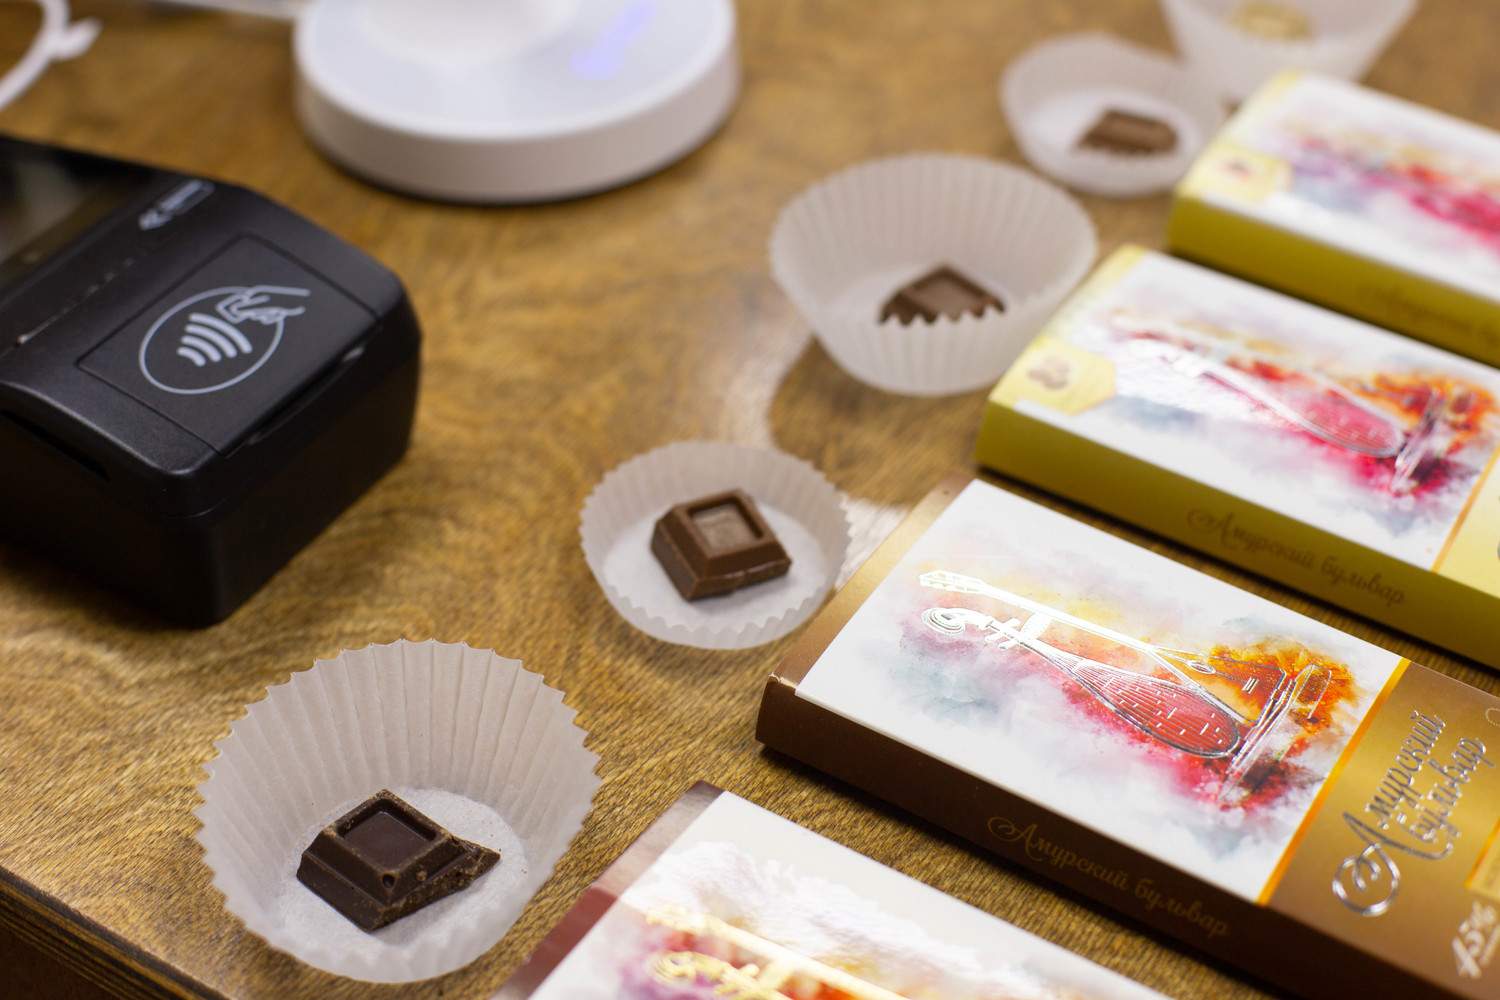 Как готовится самый настоящий, как в Швейцарии, хабаровский шоколад «Амурский бульвар»: фото 